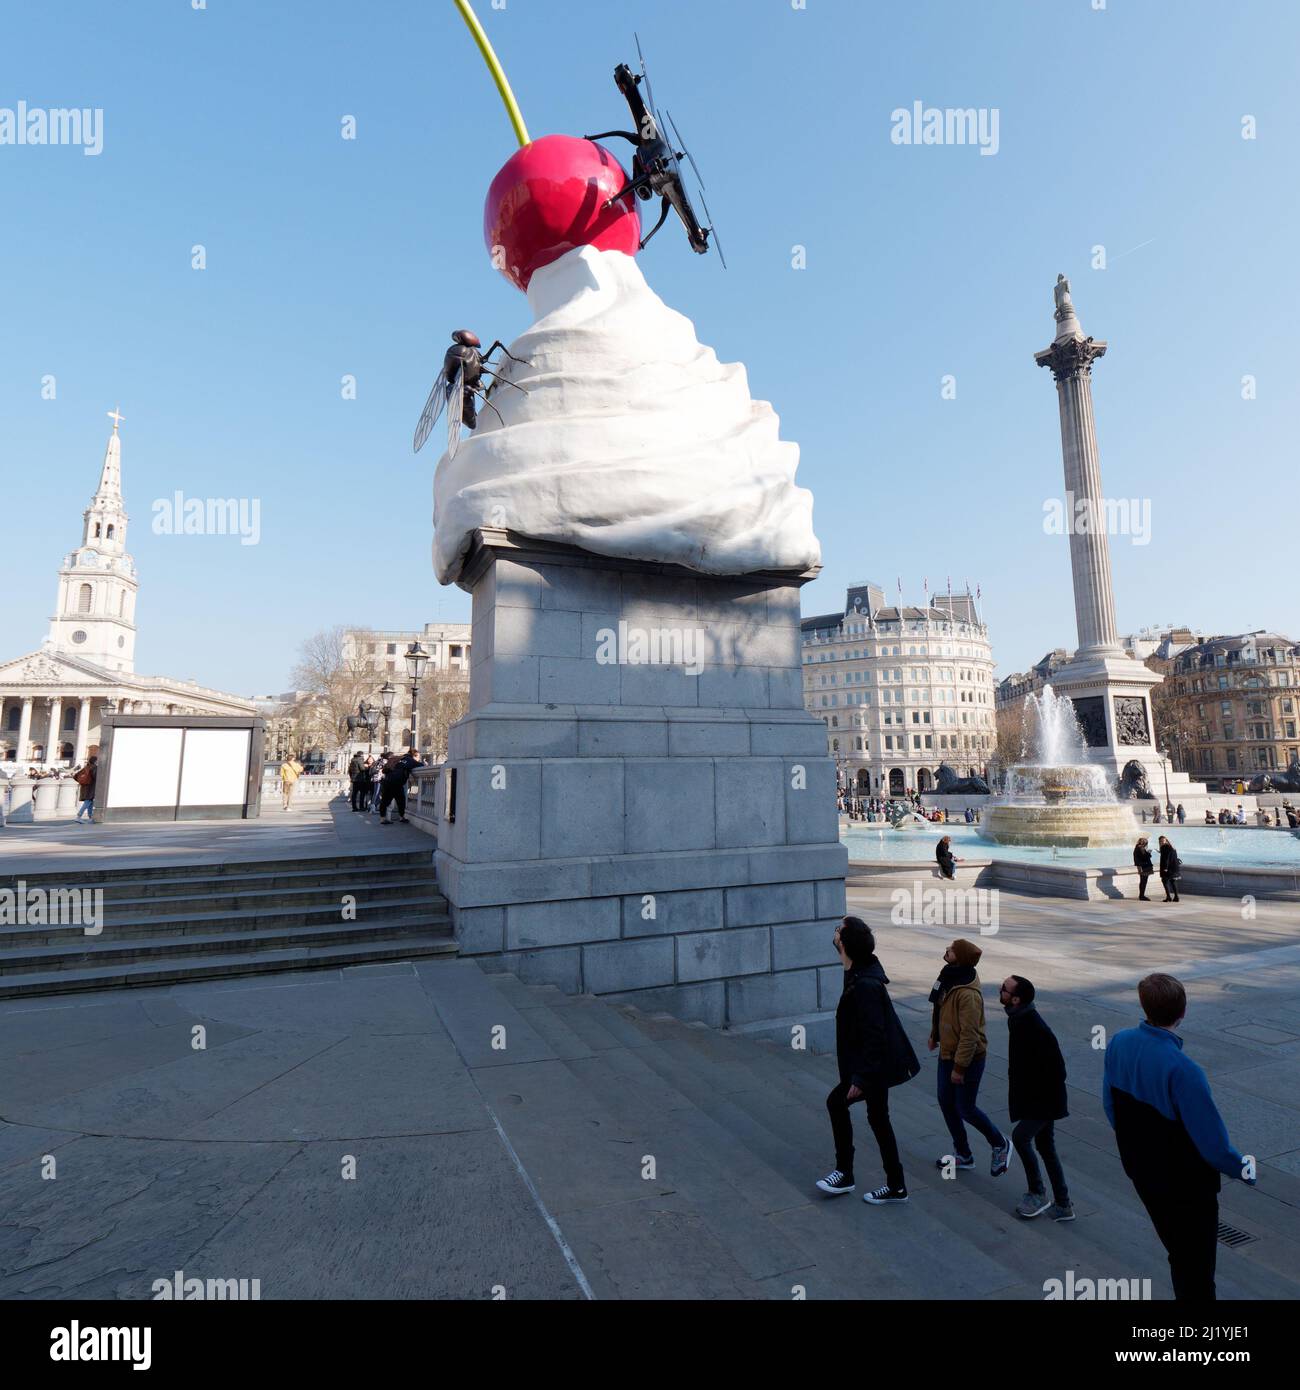 Londres, Grand Londres, Angleterre, 08 mars 2022 : les touristes ont un regard sur Trafalgar Square quatrième Plinth d'une sculpture de crème fouettée, de cerise et de mouche. Banque D'Images